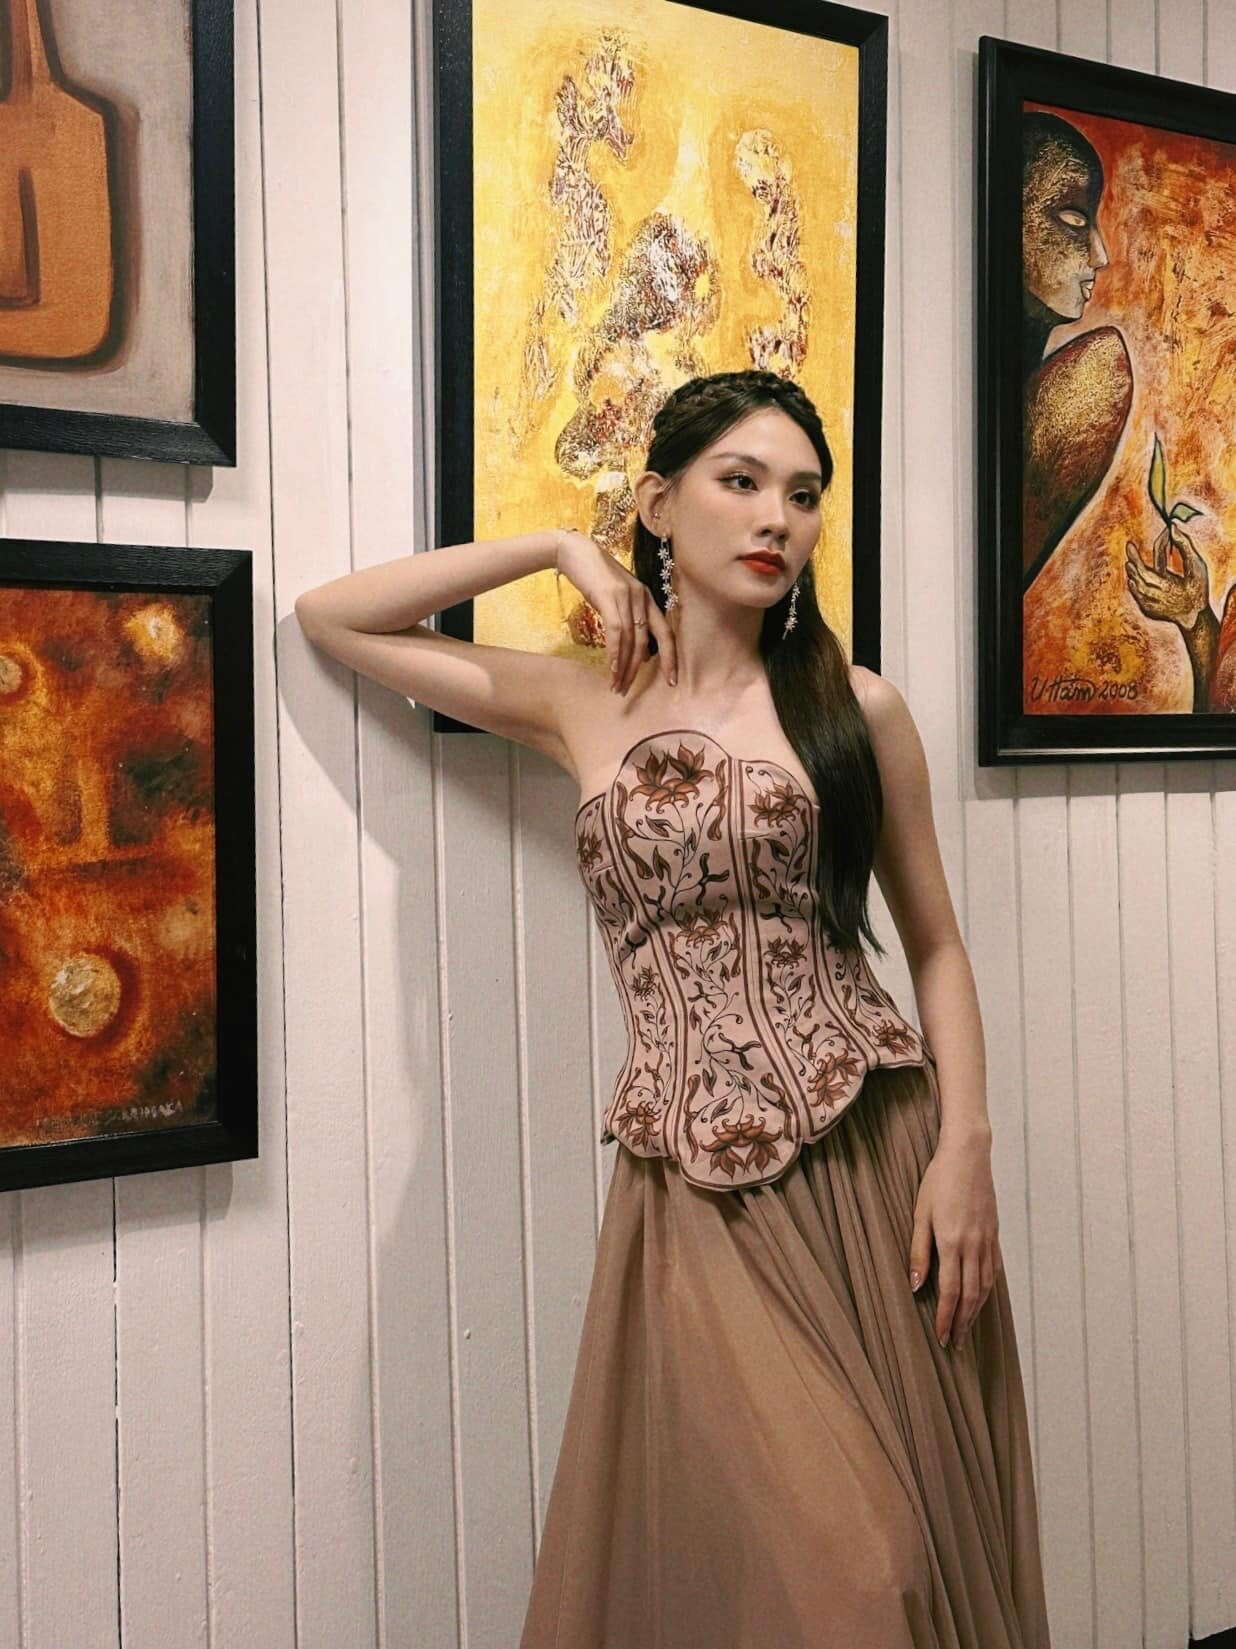 Người đẹp cũng được khen khi khéo léo quảng bá văn hóa Việt với bè bạn năm châu và truyền thông quốc tế thông qua trang phục sử dụng tại cuộc thi.